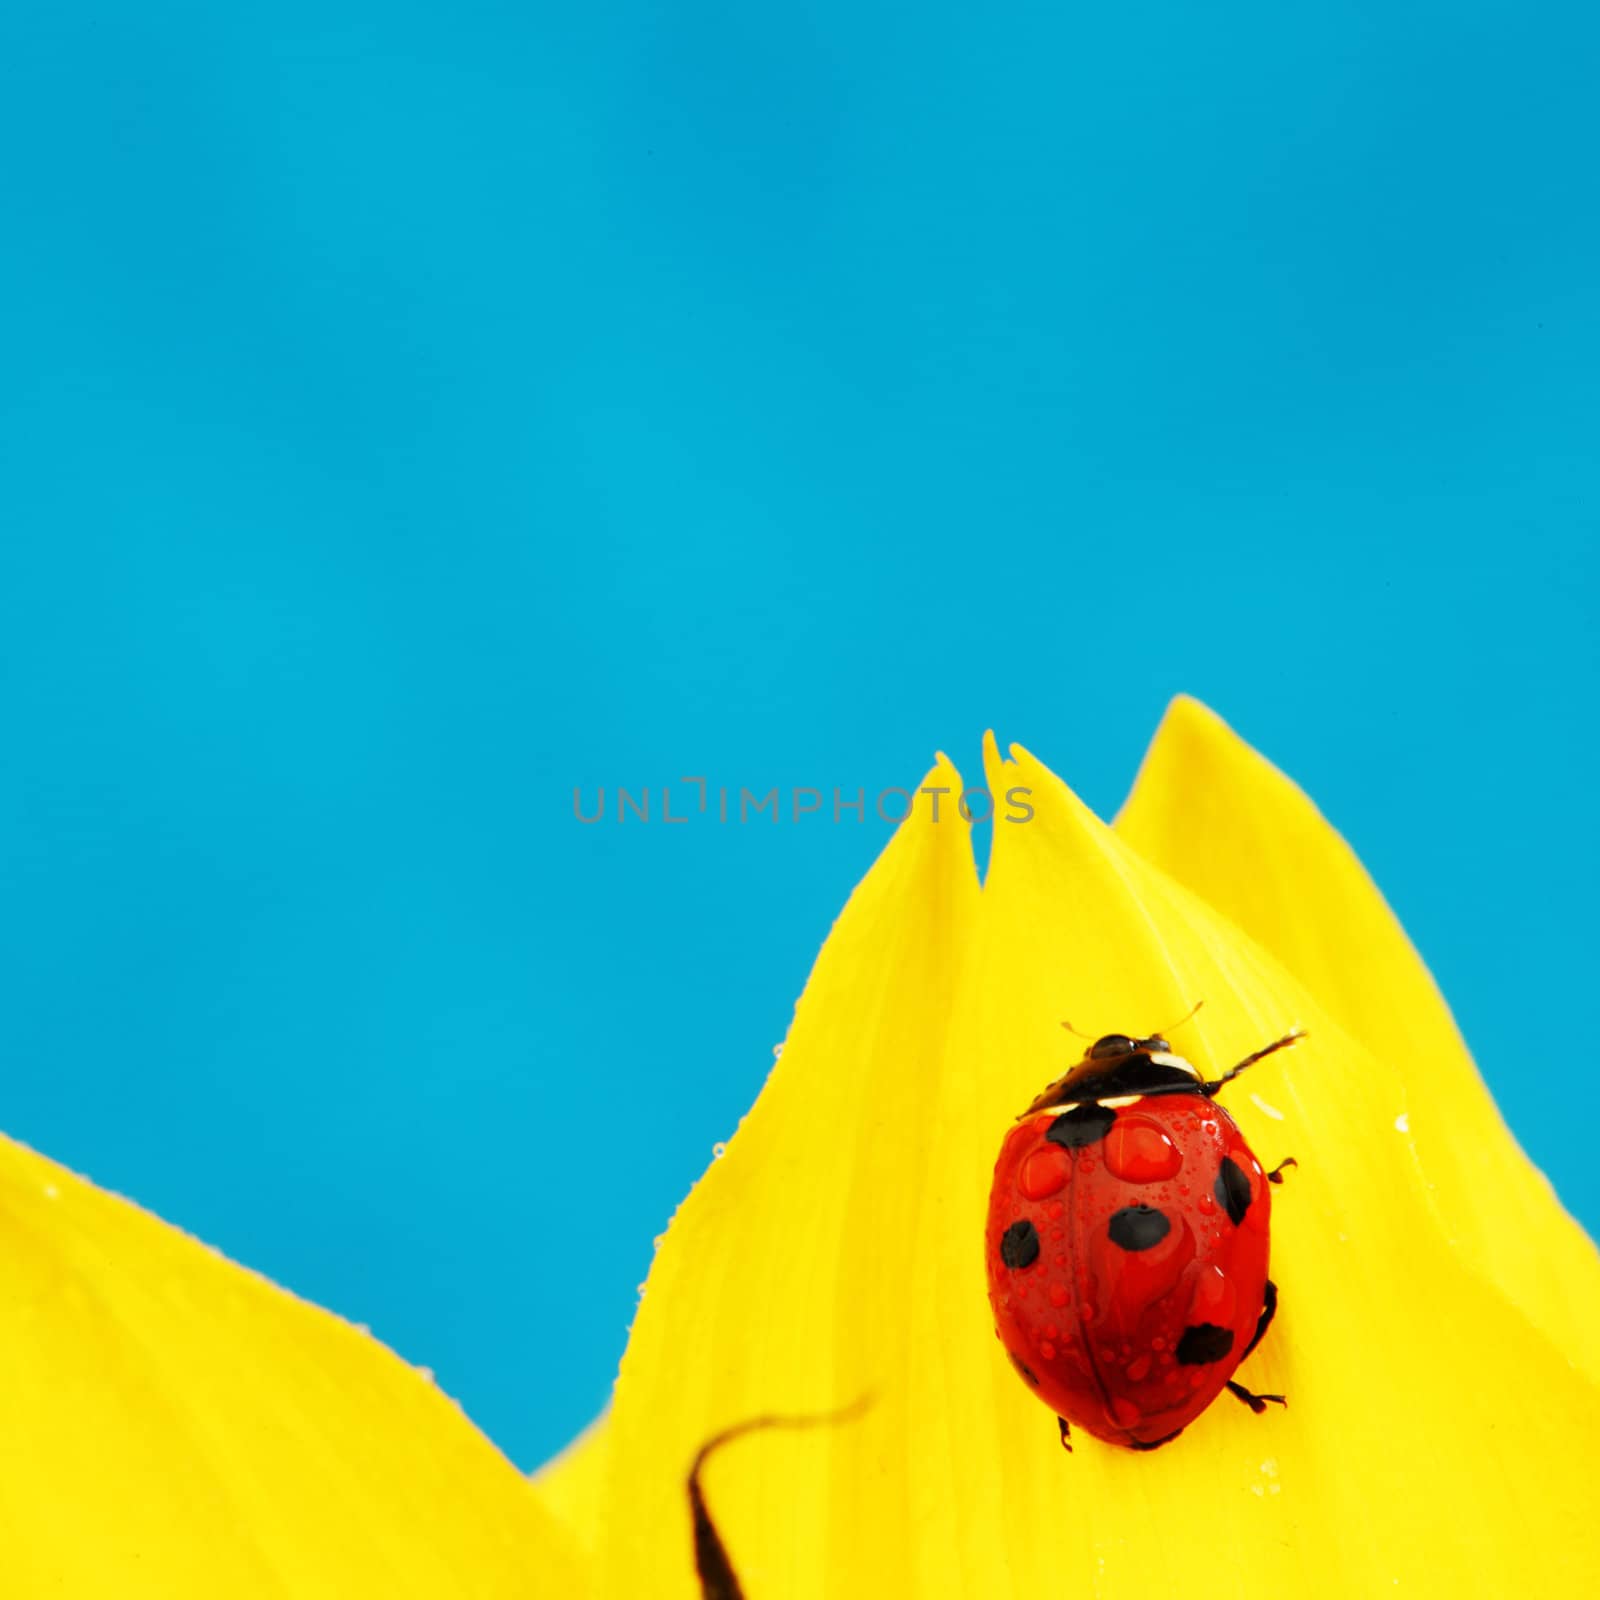 ladybug on sunflower by Yellowj